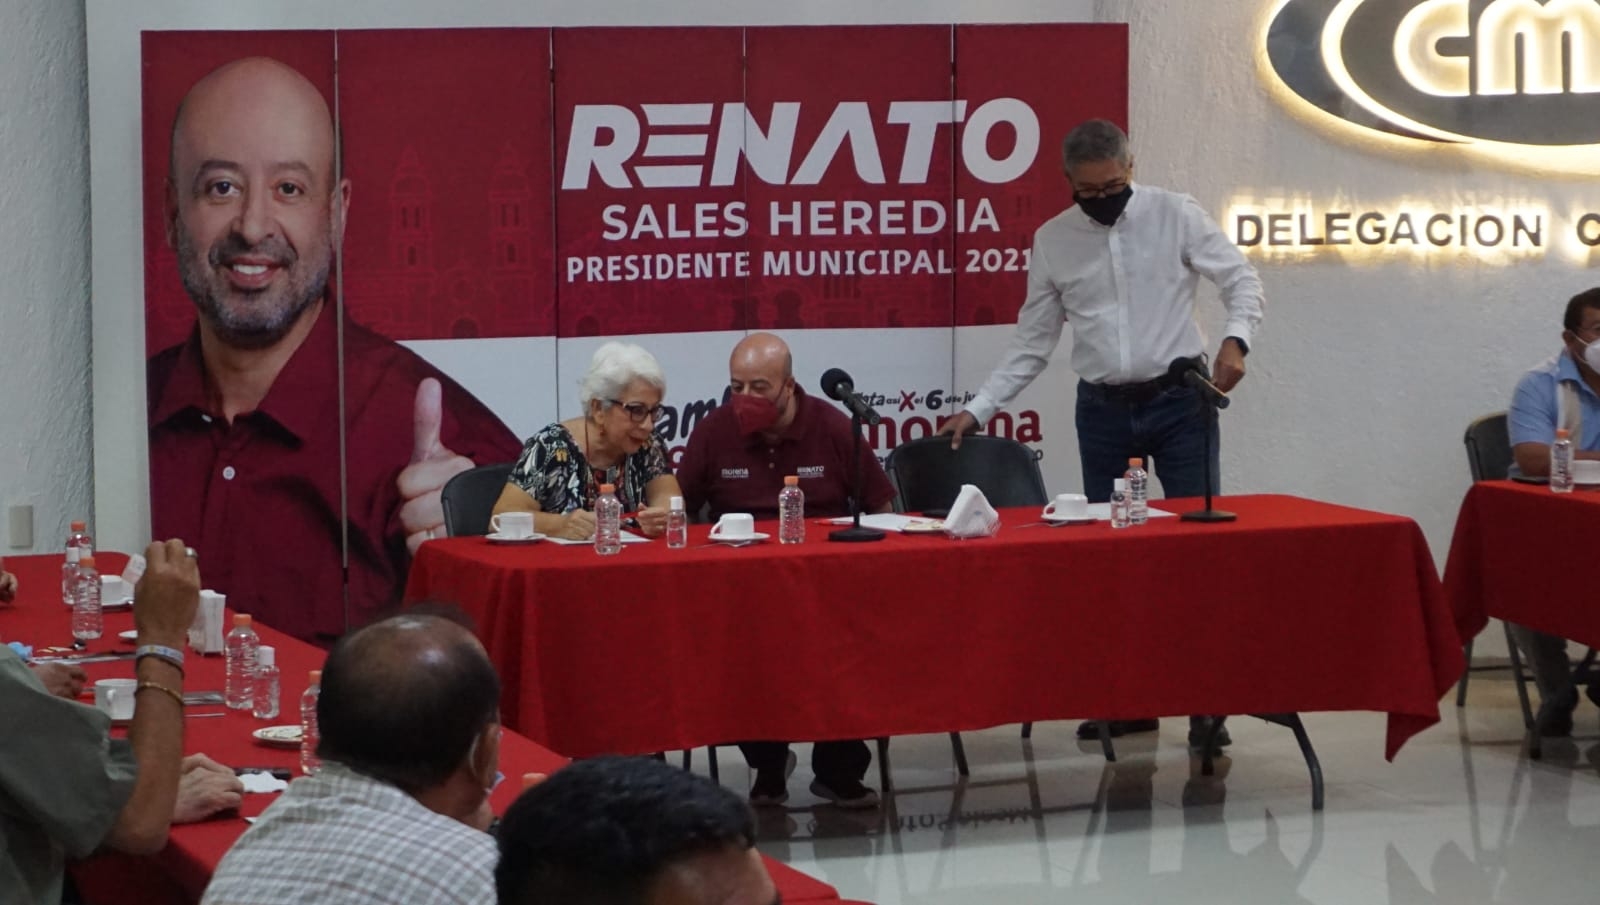 Urge disminuir requisitos para permisos de obra pública en Campeche: Renato Sales